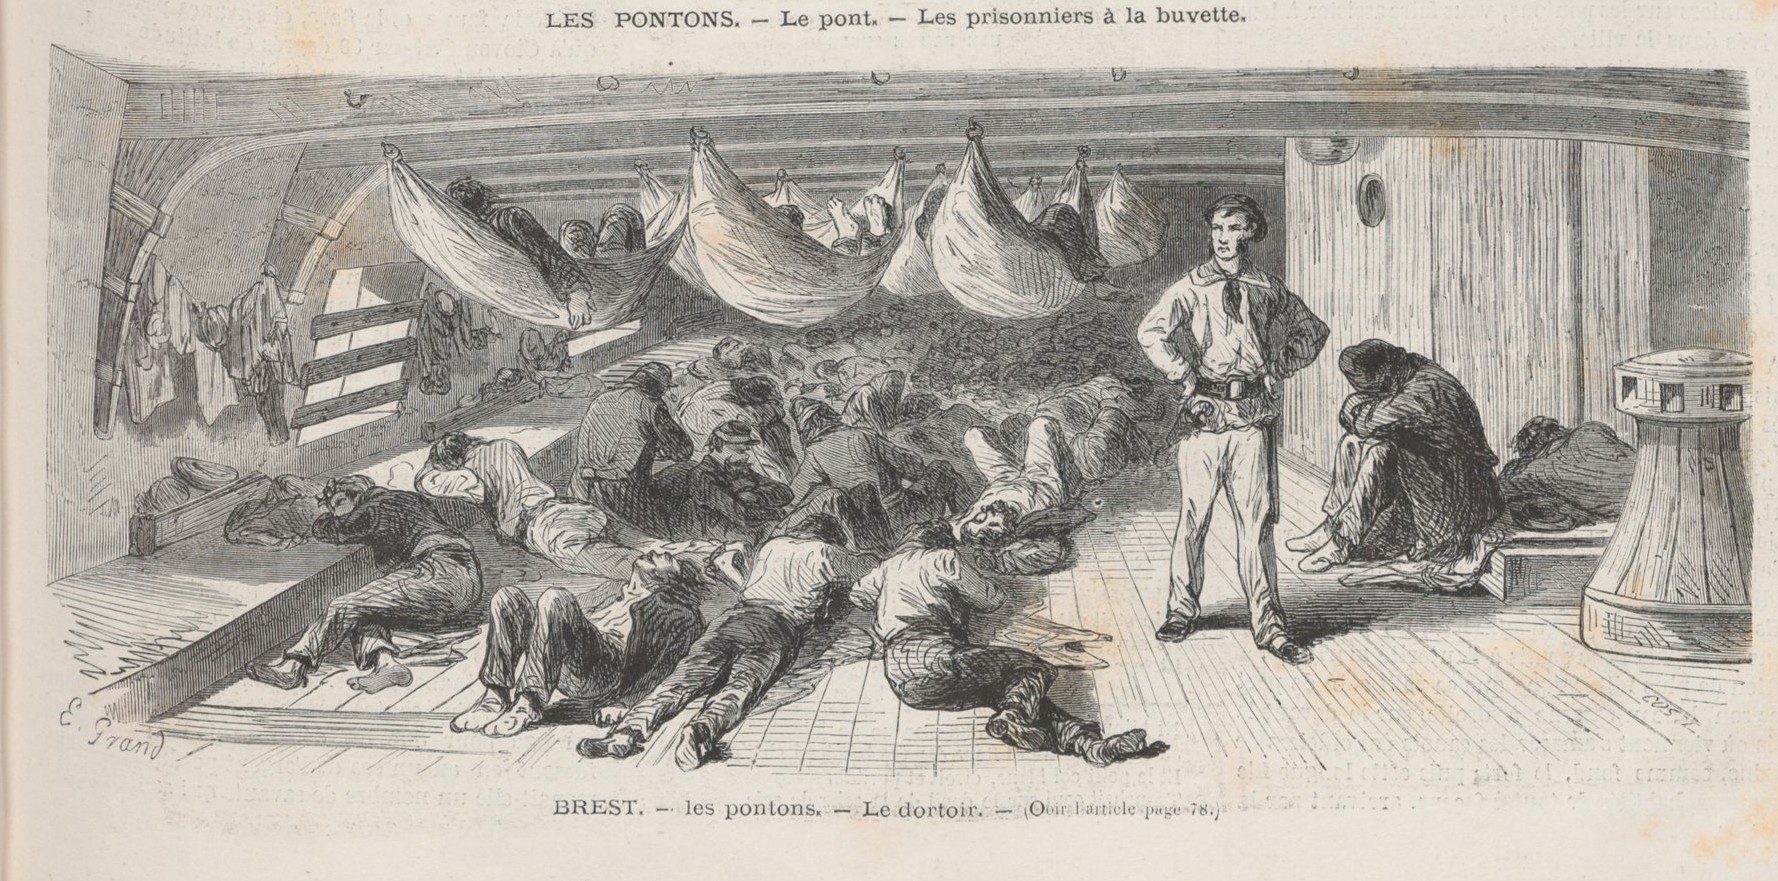 Brest, les pontons, le dortoir - dessin de Grand ("Le Monde Illustr du 29 juillet 1871)